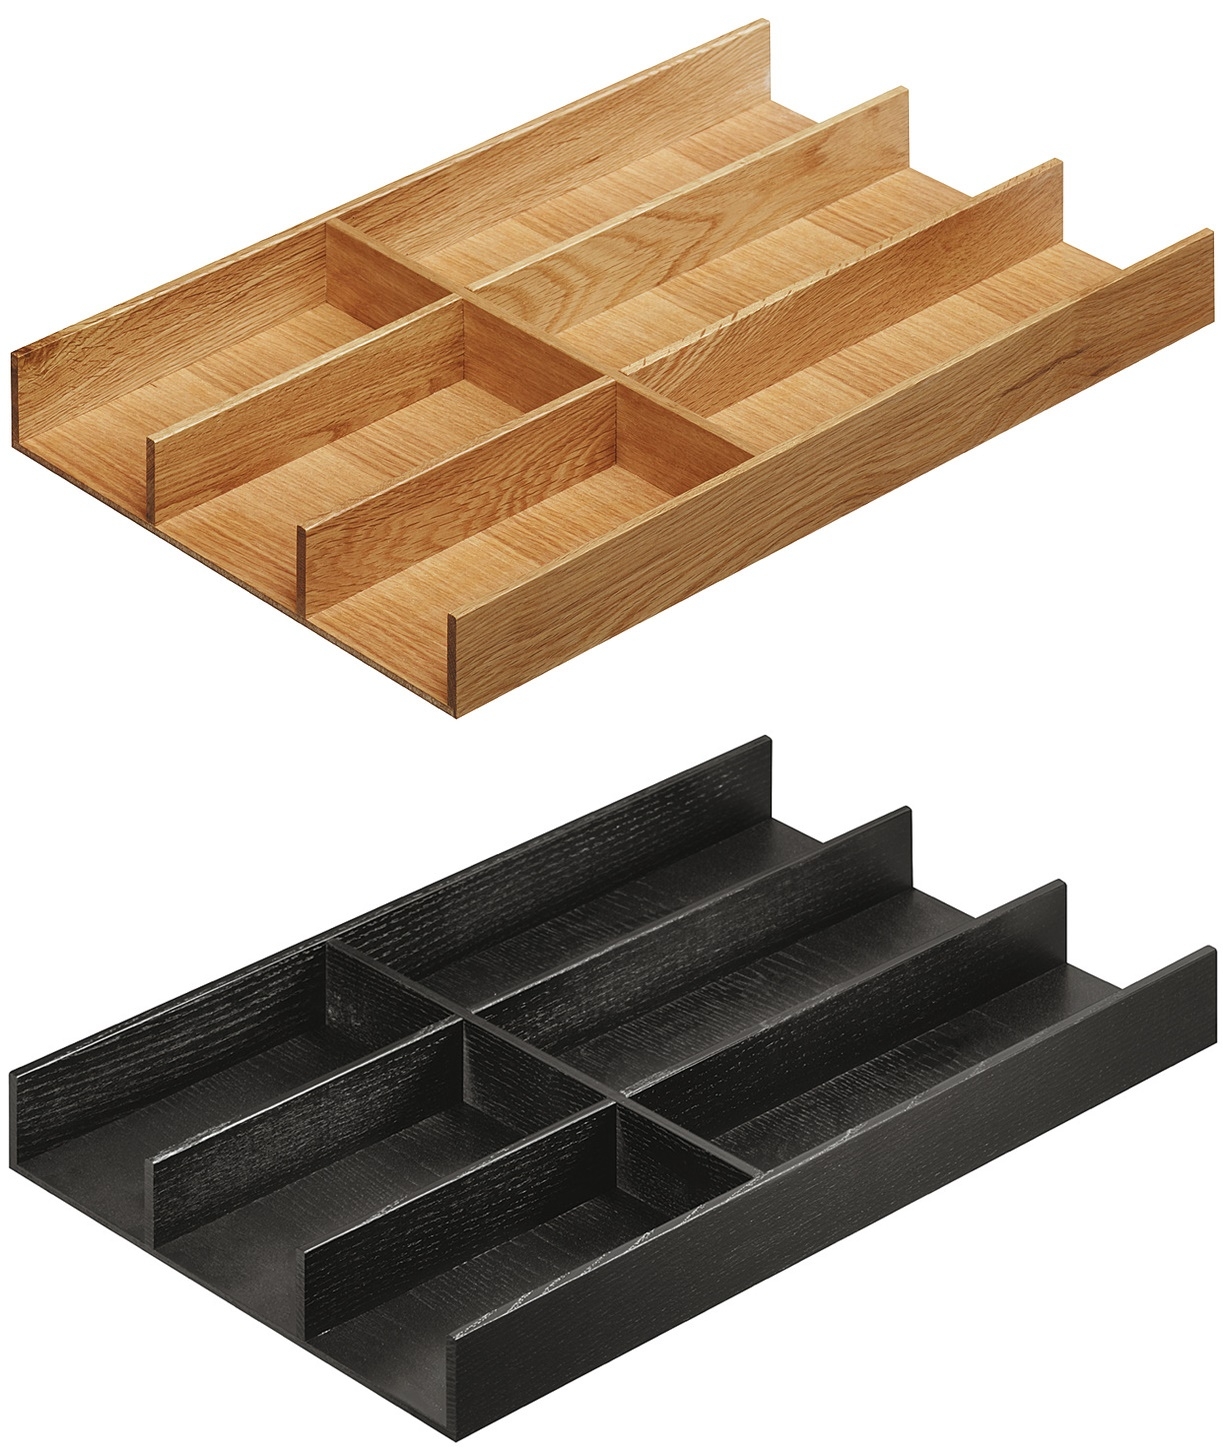 Cuberteros para cajón, Cuberteros para cajón Los organizadores de  utensilios Häfele son prácticos y adaptables a diferentes tamaños de cajón  y diferentes necesidades de, By Mundo Häfele